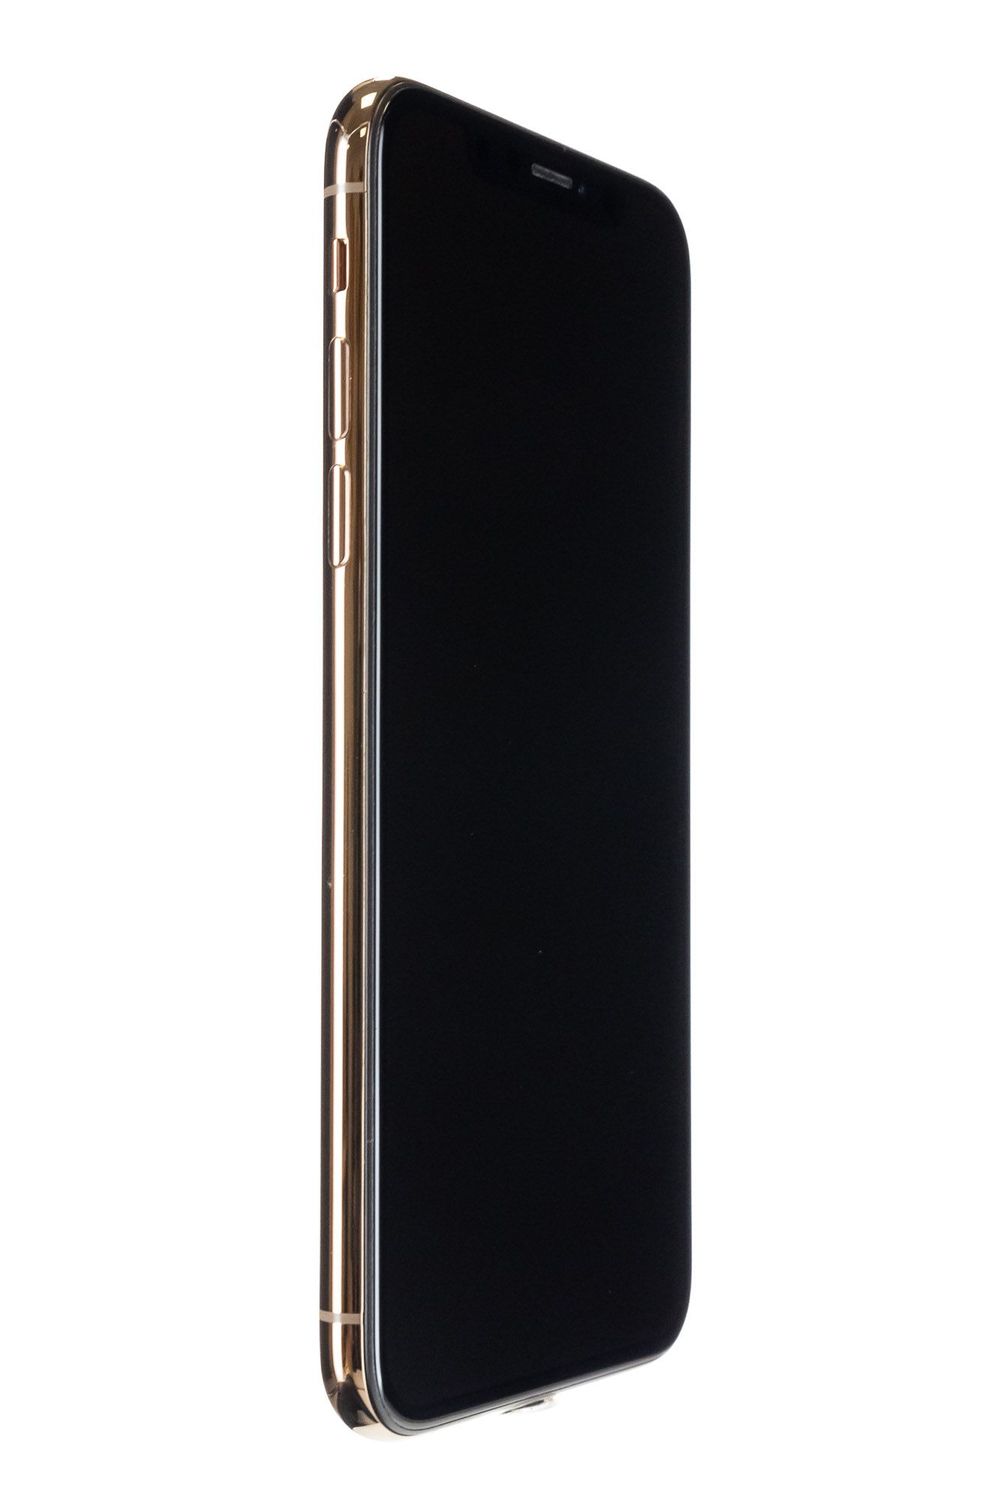 Κινητό τηλέφωνο Apple iPhone XS, Gold, 64 GB, Excelent